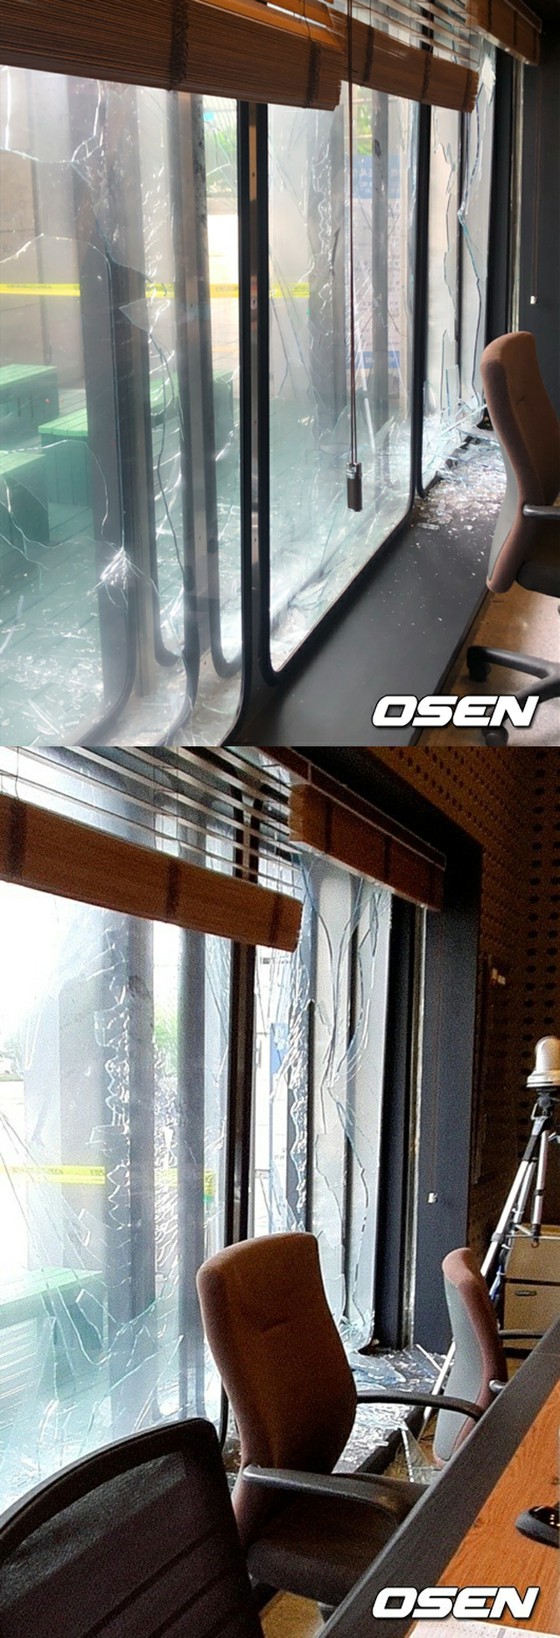 KBS, sebuah kasus di mana jendela kaca pecah di studio terbuka radio selama siaran langsung ... Sebuah adegan mengejutkan tanpa merusak nyawa